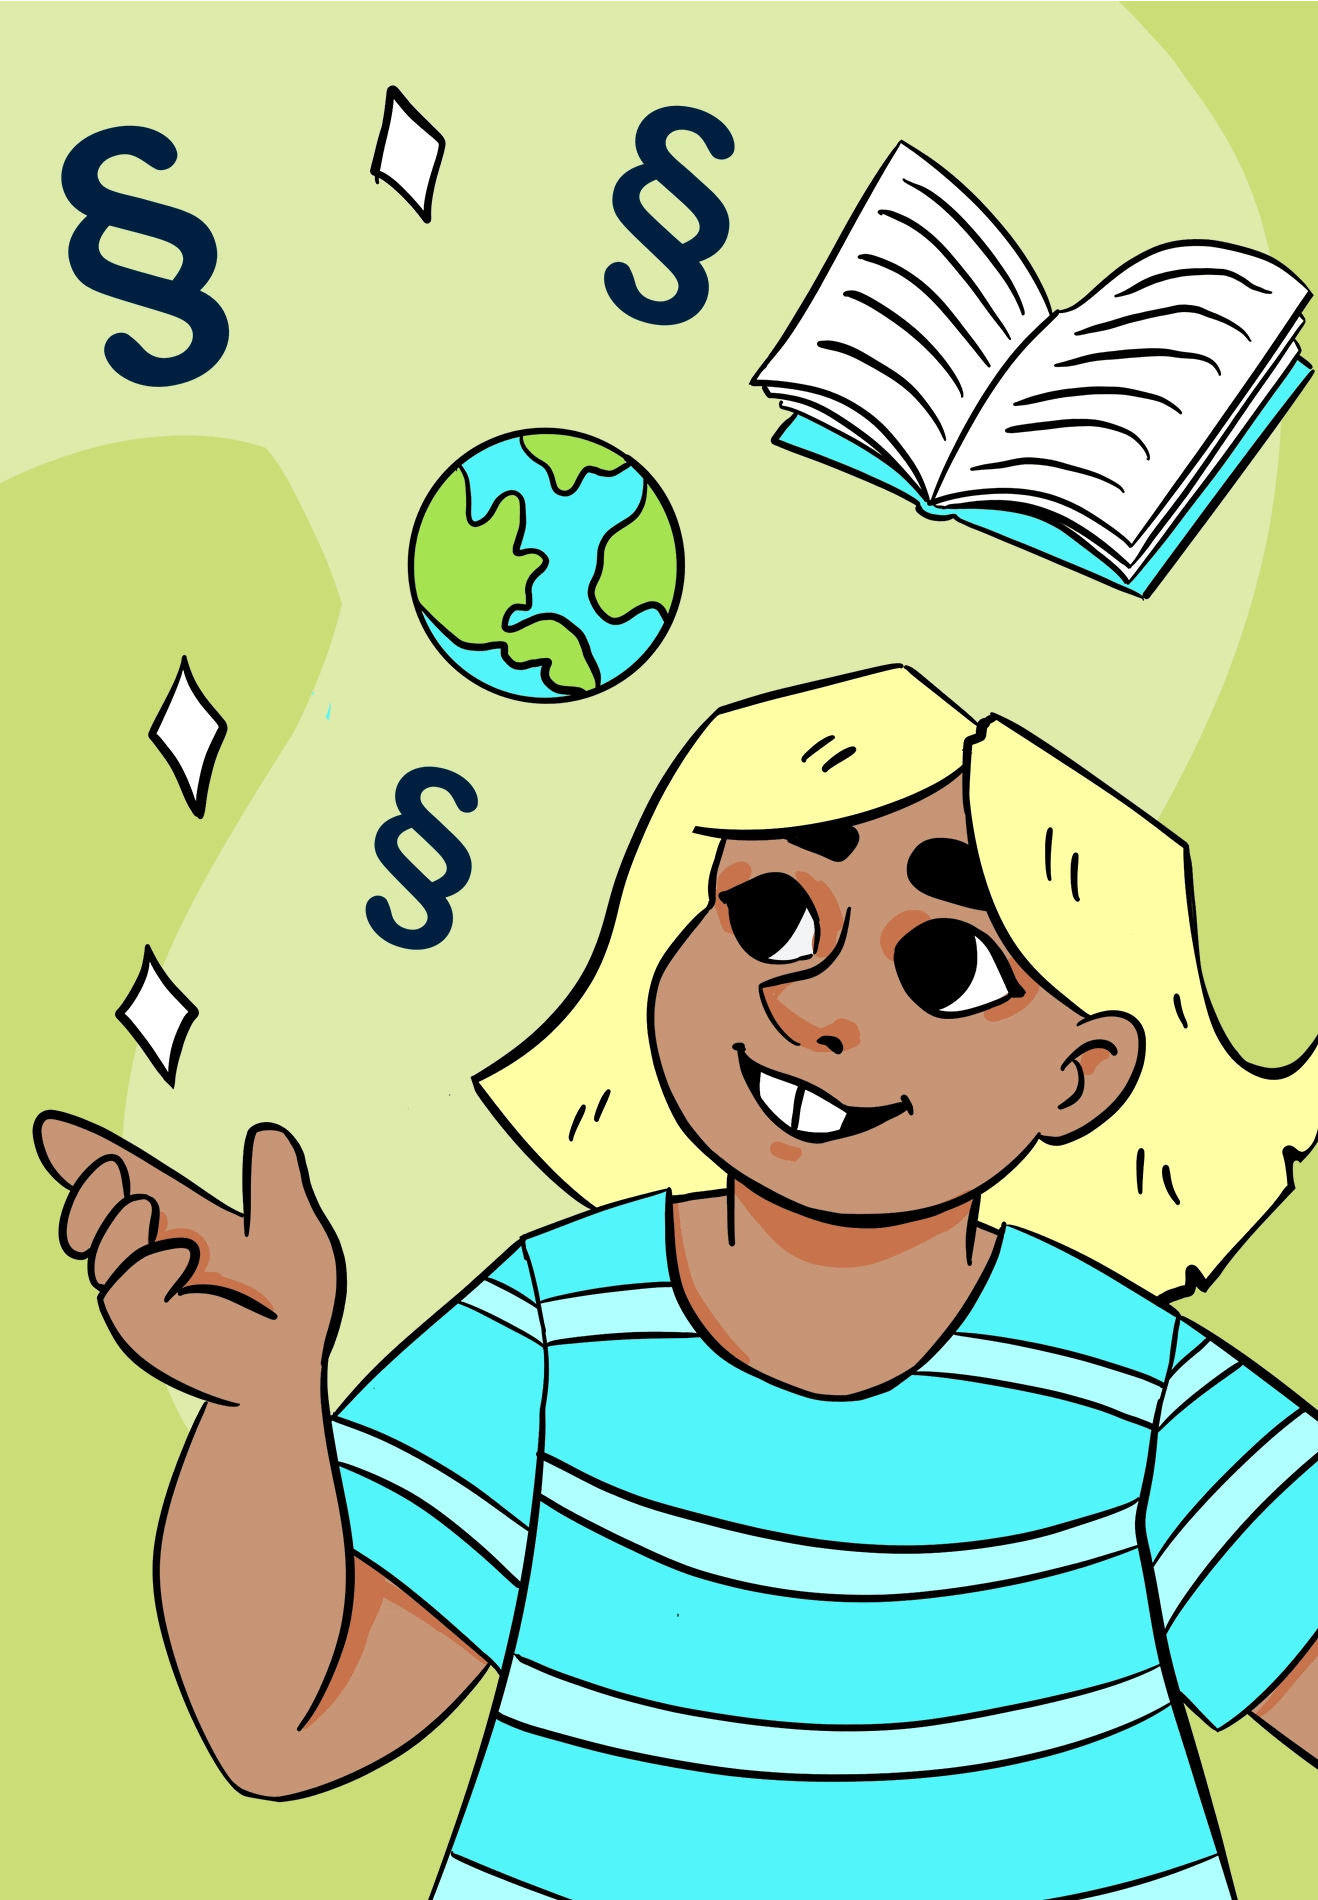 Rättigheter: ett barn med blont hår framför en jordglob med paragraftecken